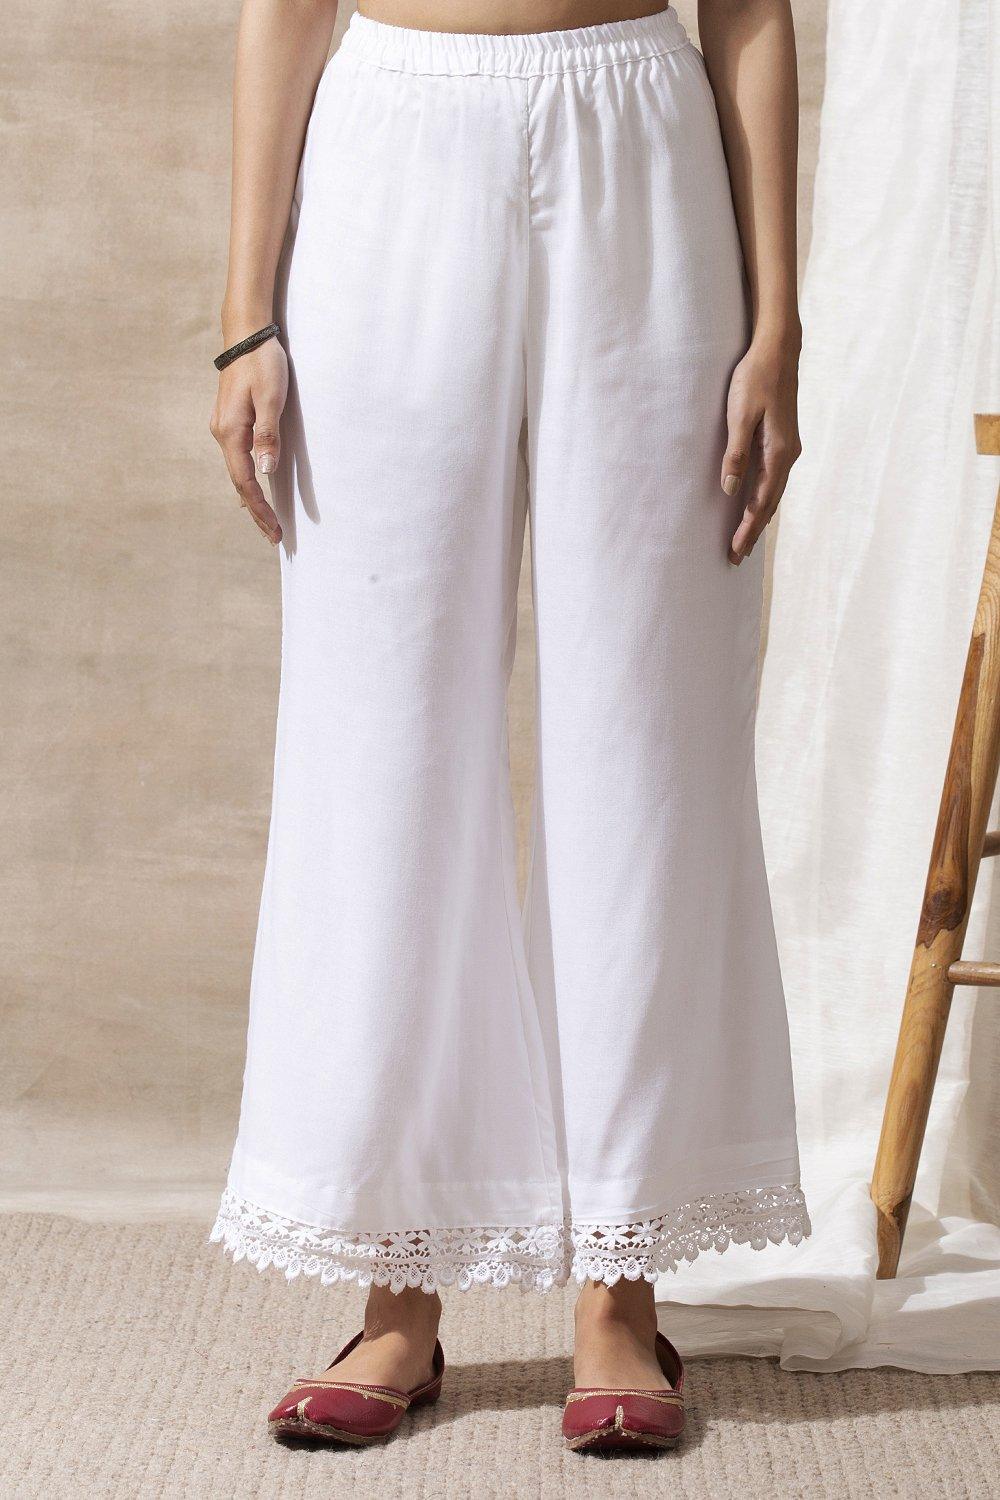 White Broad Lace Cotton Palazzos - Tahiliya